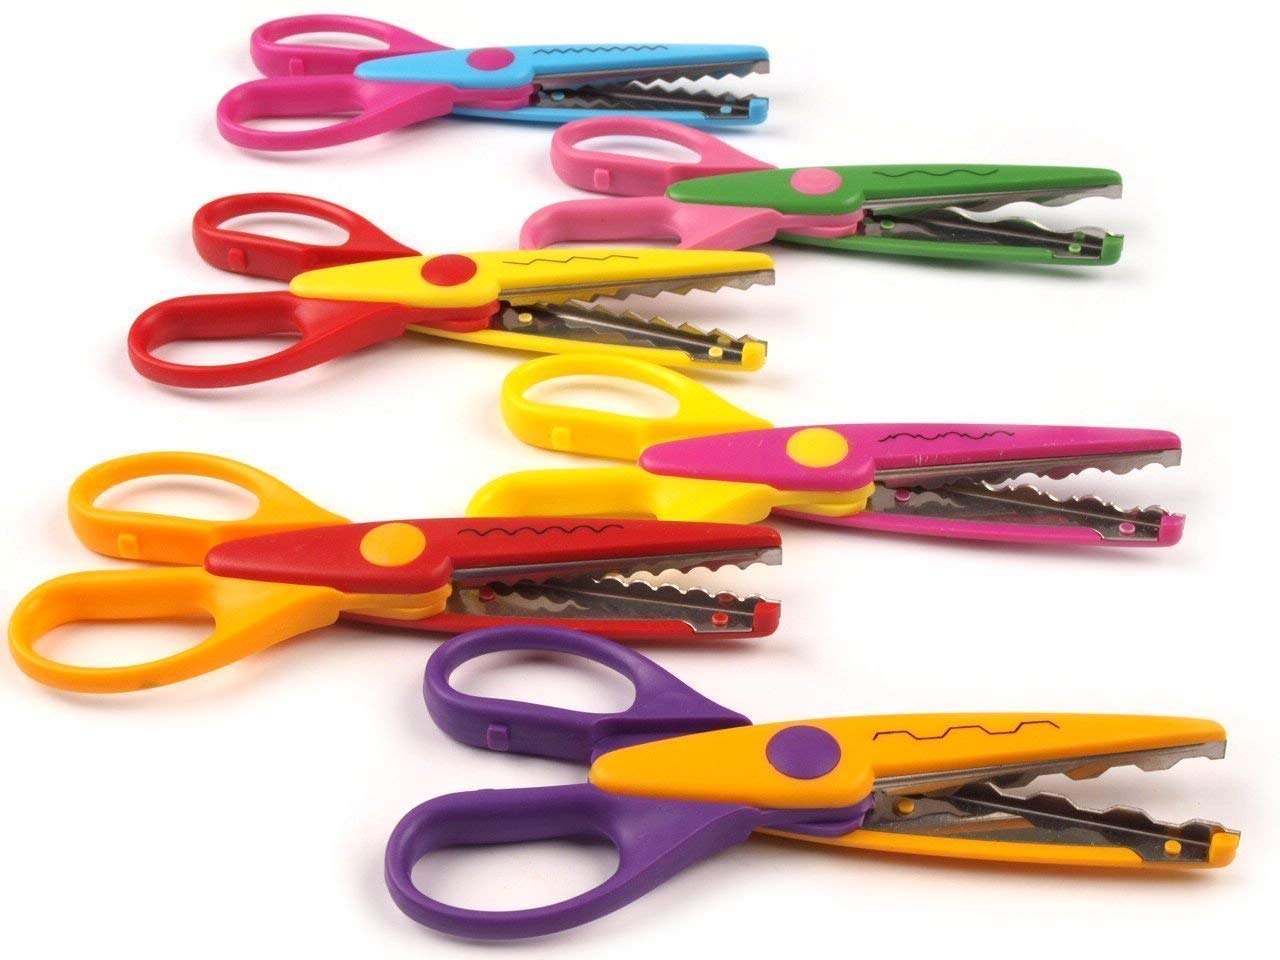 Types of Scissors